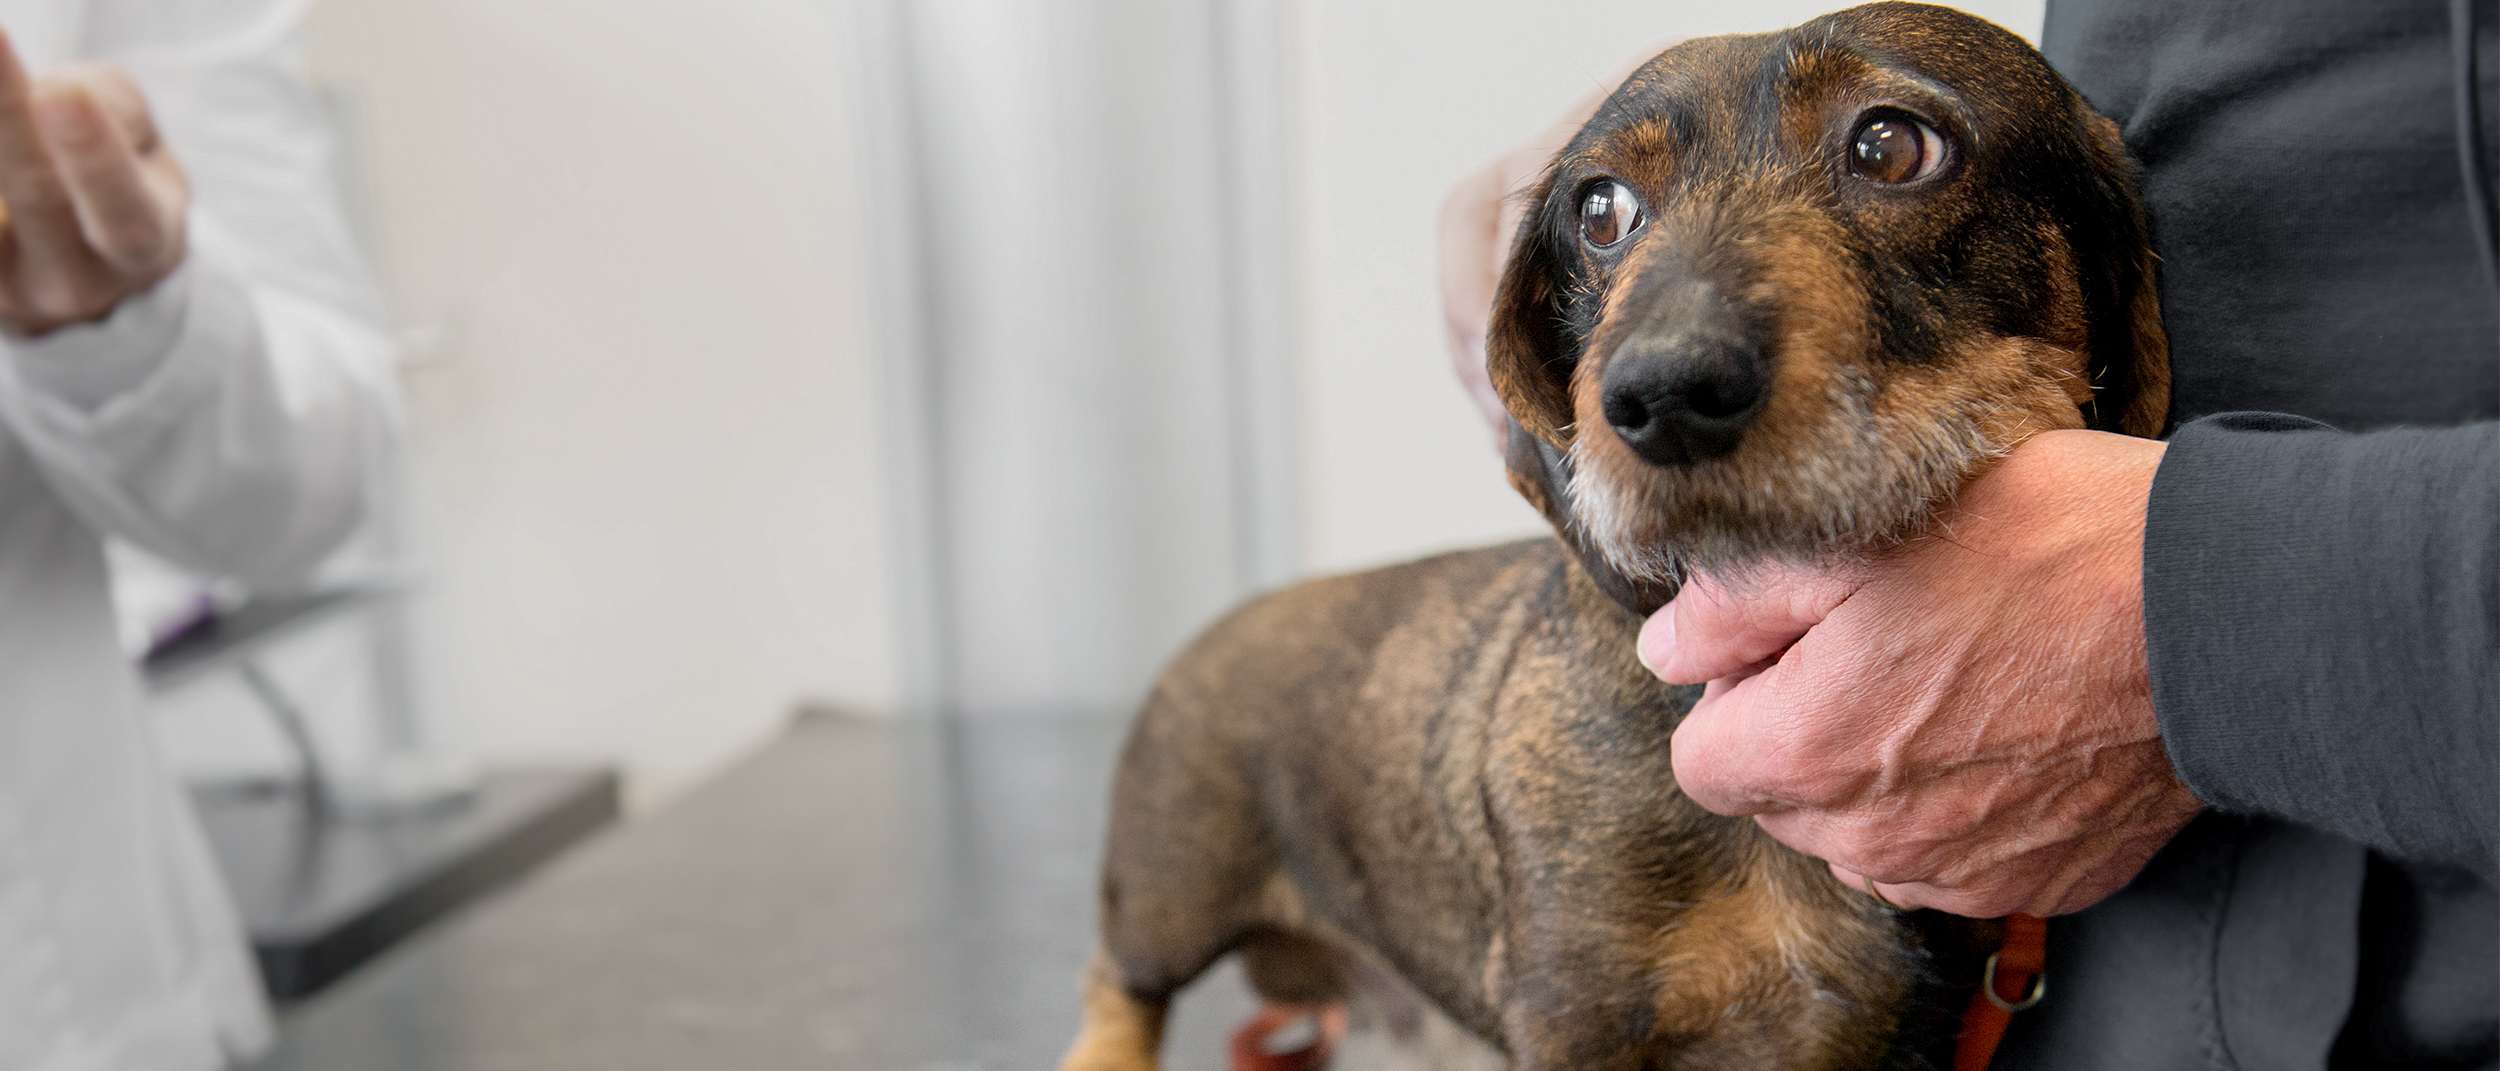 Voksen dachshund som står på et undersøkelsesbord hos veterinæren med sin eier.